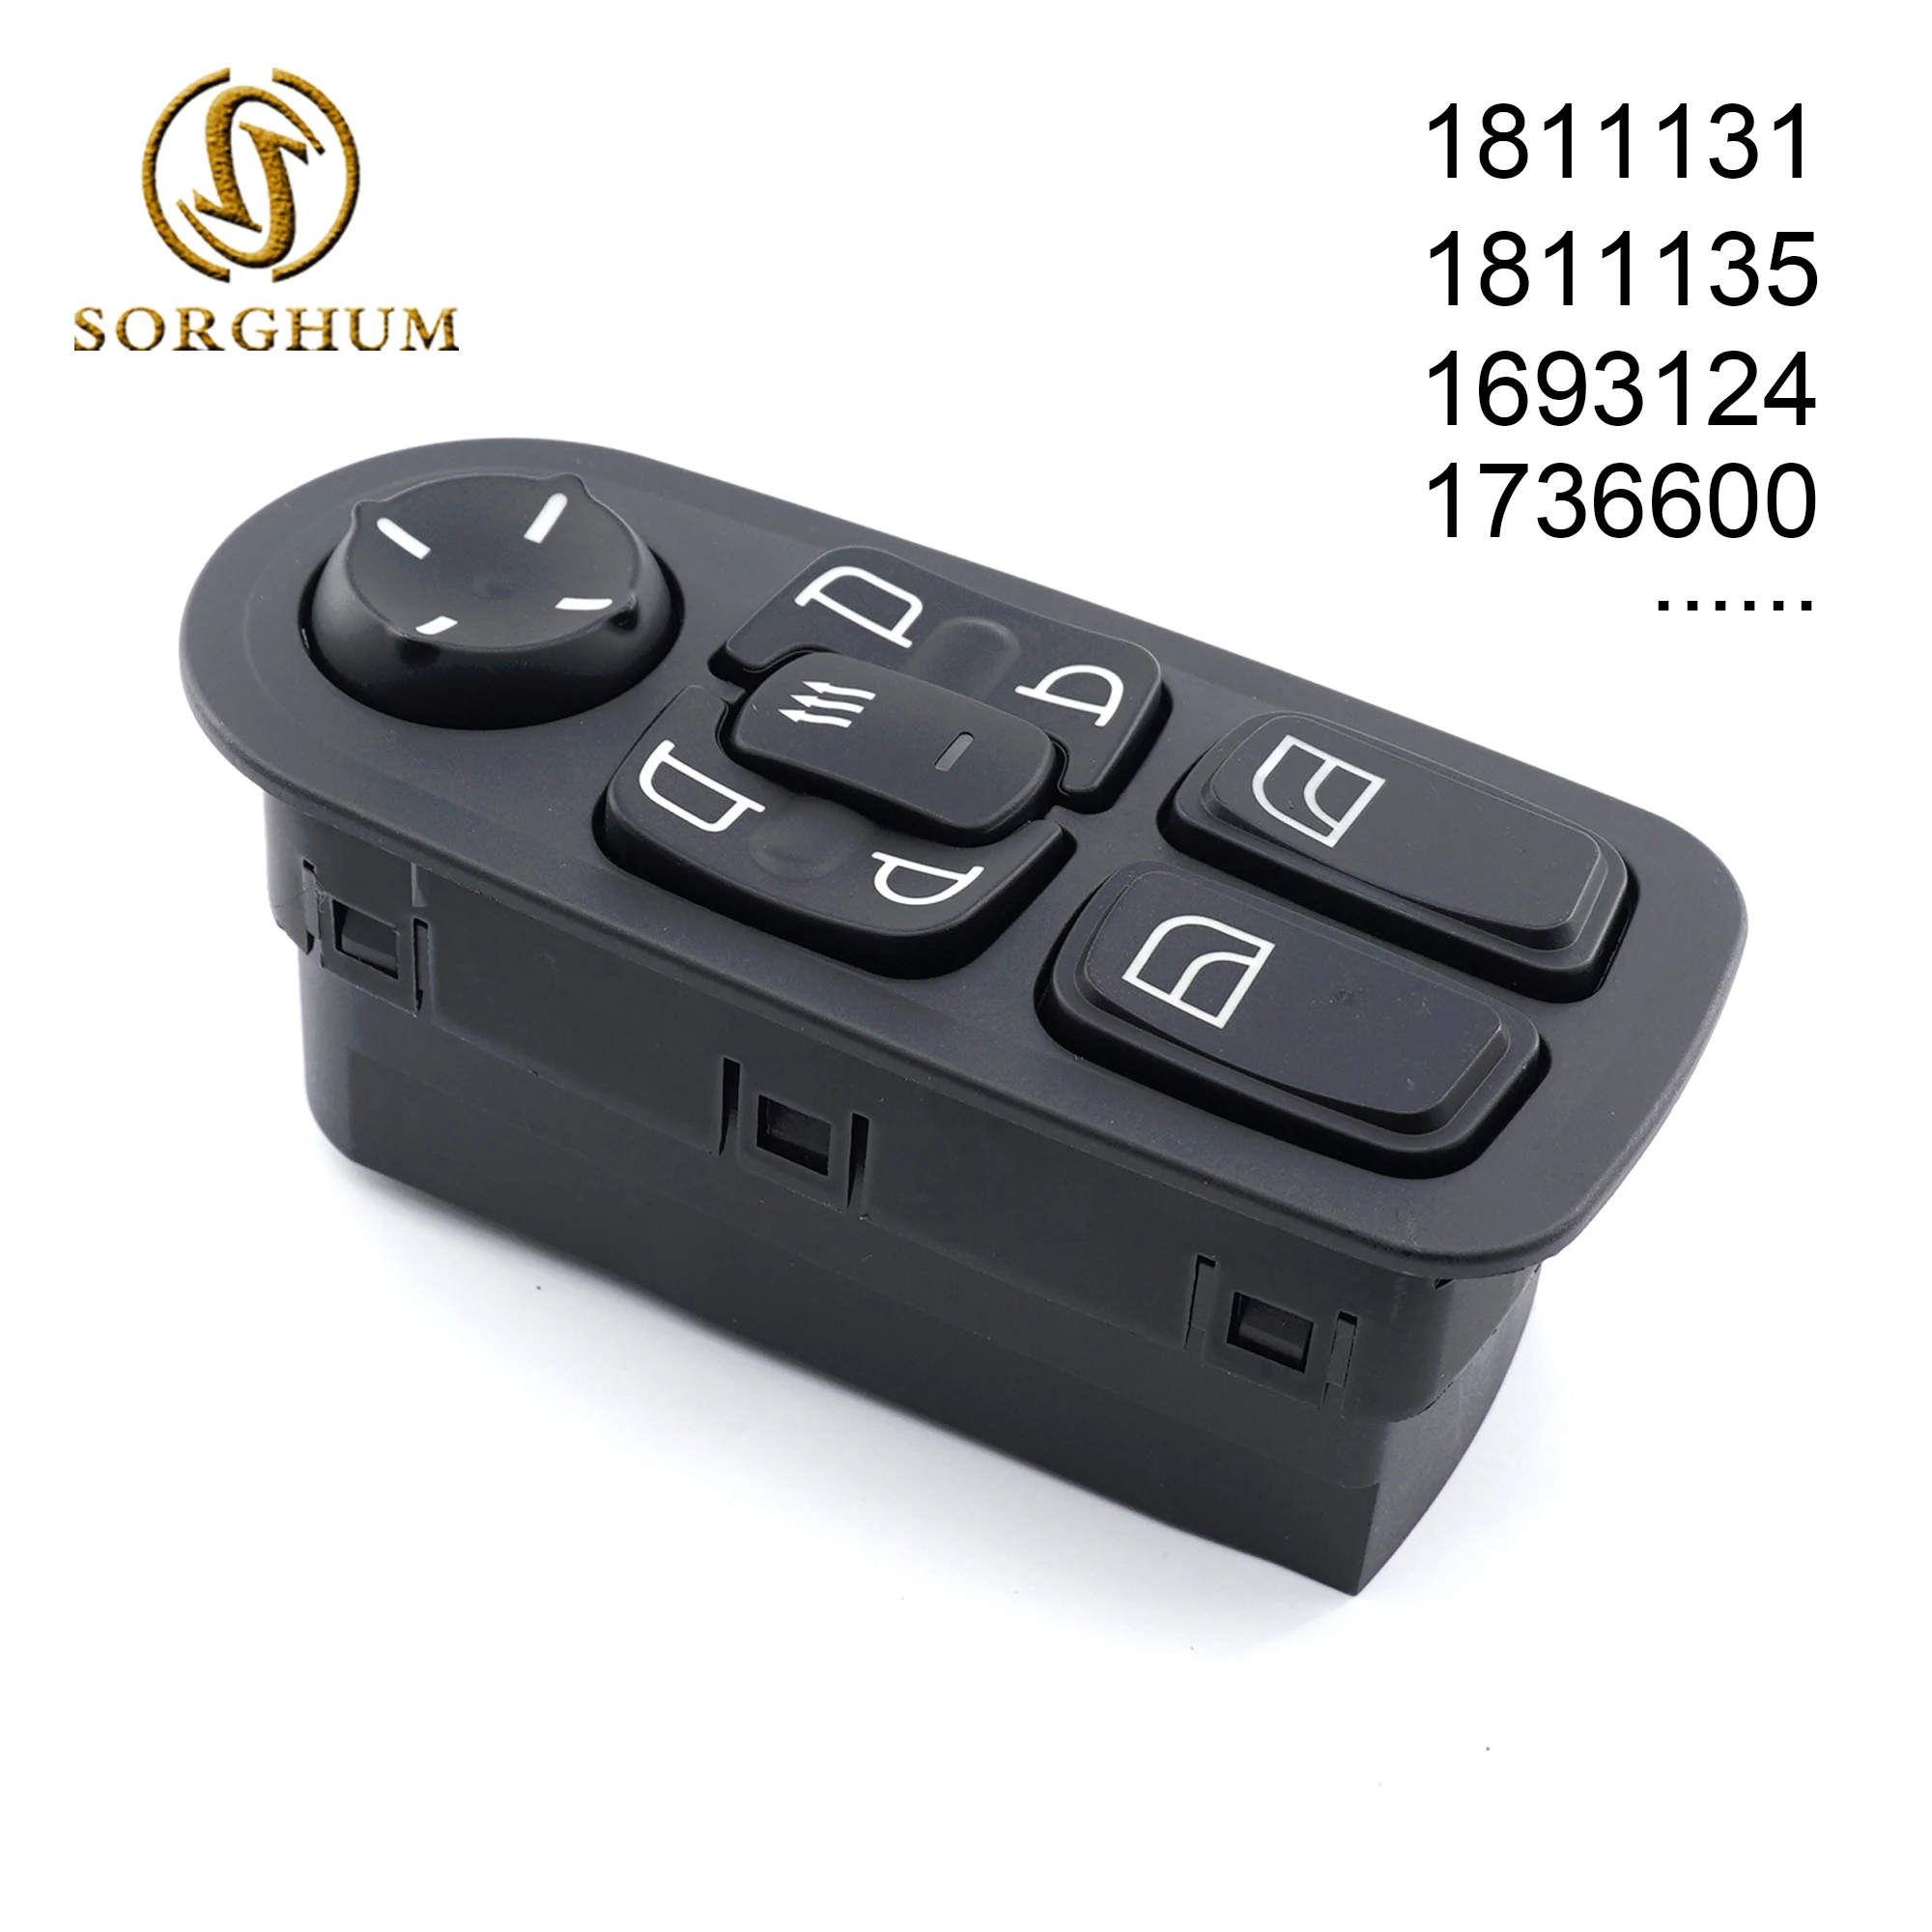 

Sorghum 1811131 1811135 1698944 1669884 1693124 Truck Master Power Window Switch For DAF XF X105 XF CF65 CF75 CF85 XF95 XF105